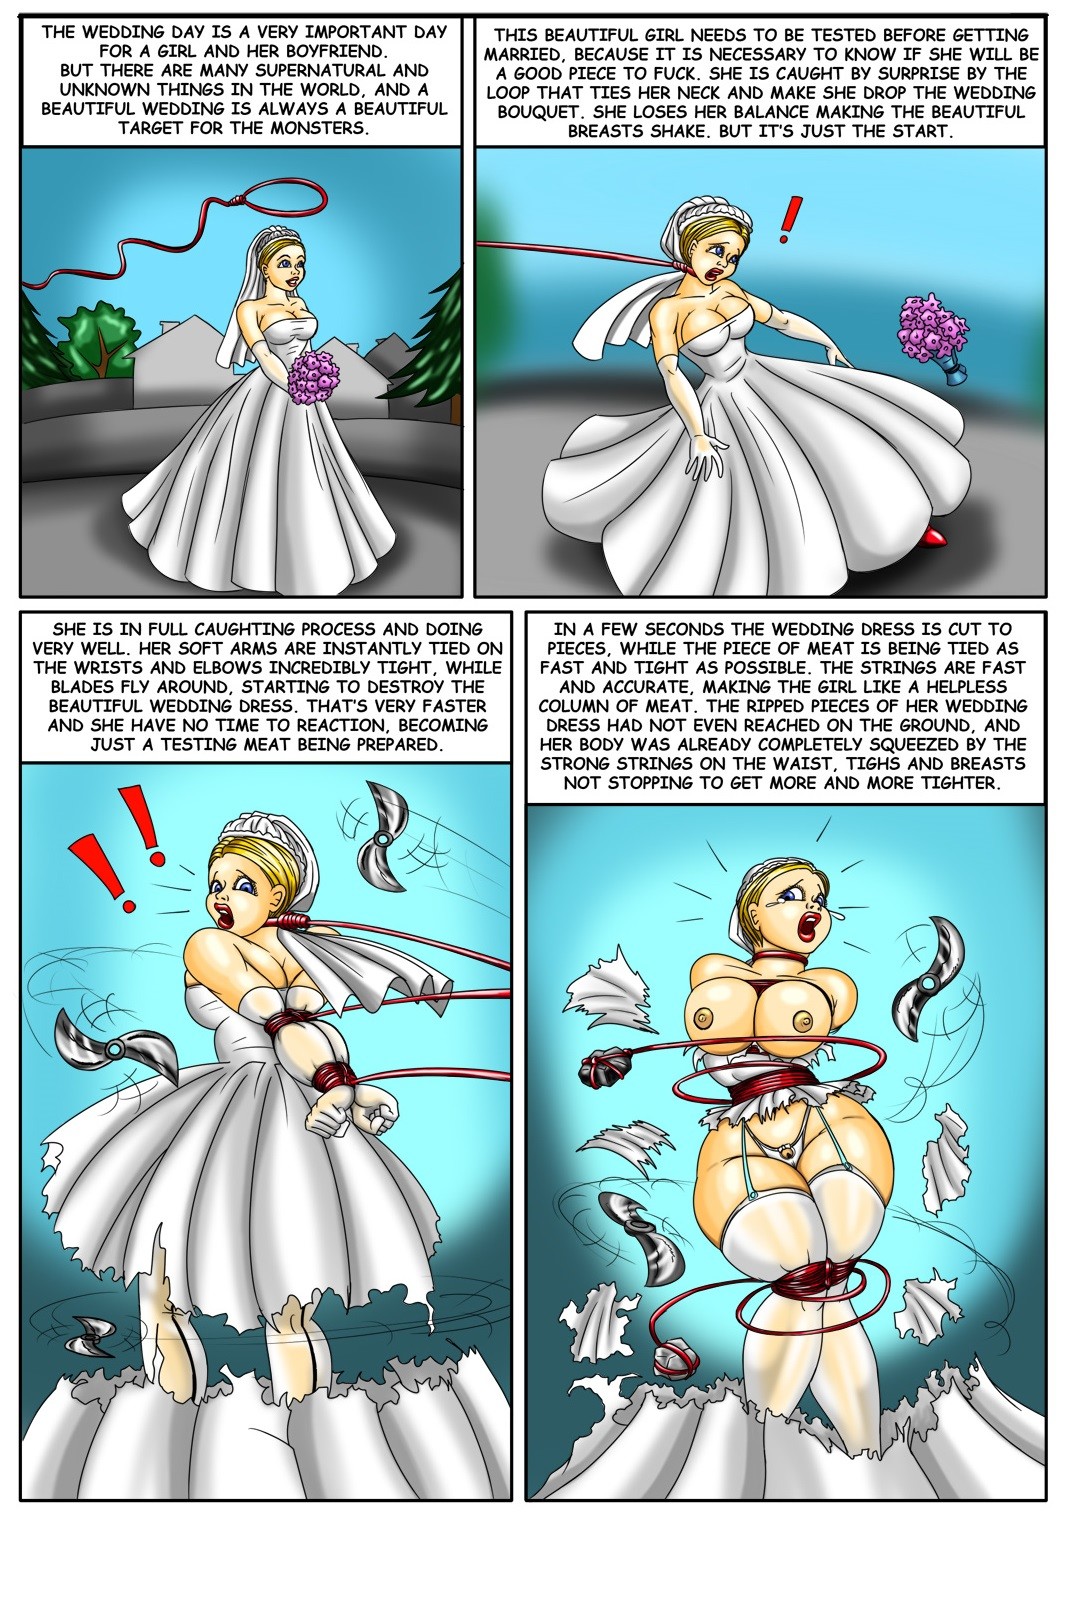 Porn Comics - Monster Bride Testing Service porn comics 8 muses